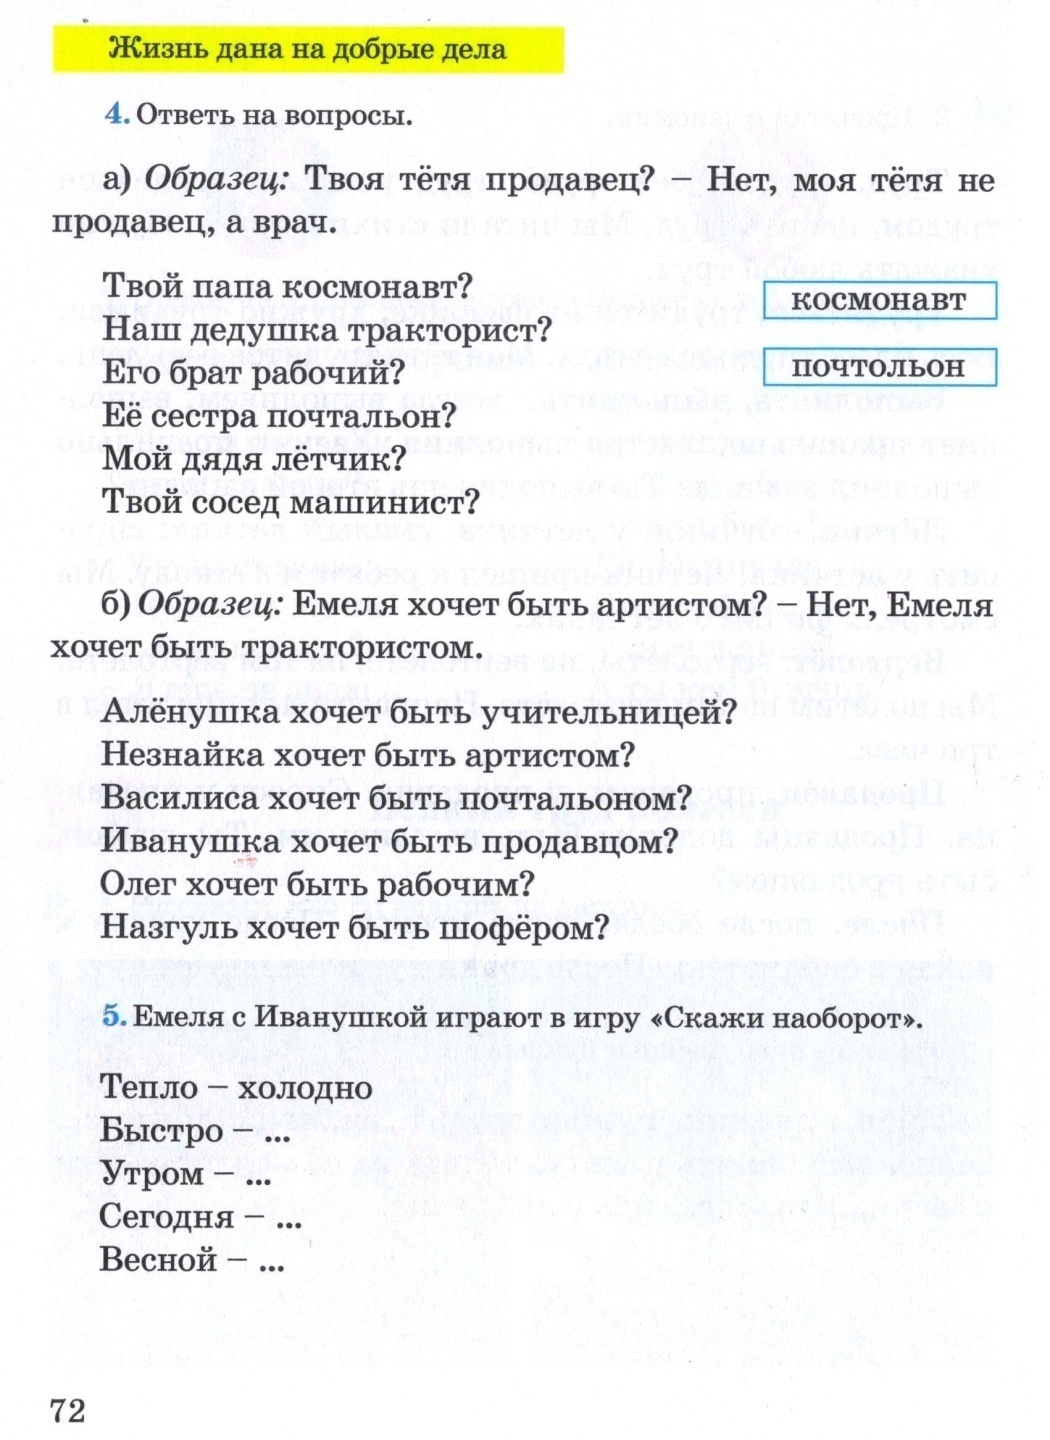 Поурочное планирование по русскому языку 4 класс 3 четверть 20 уроков